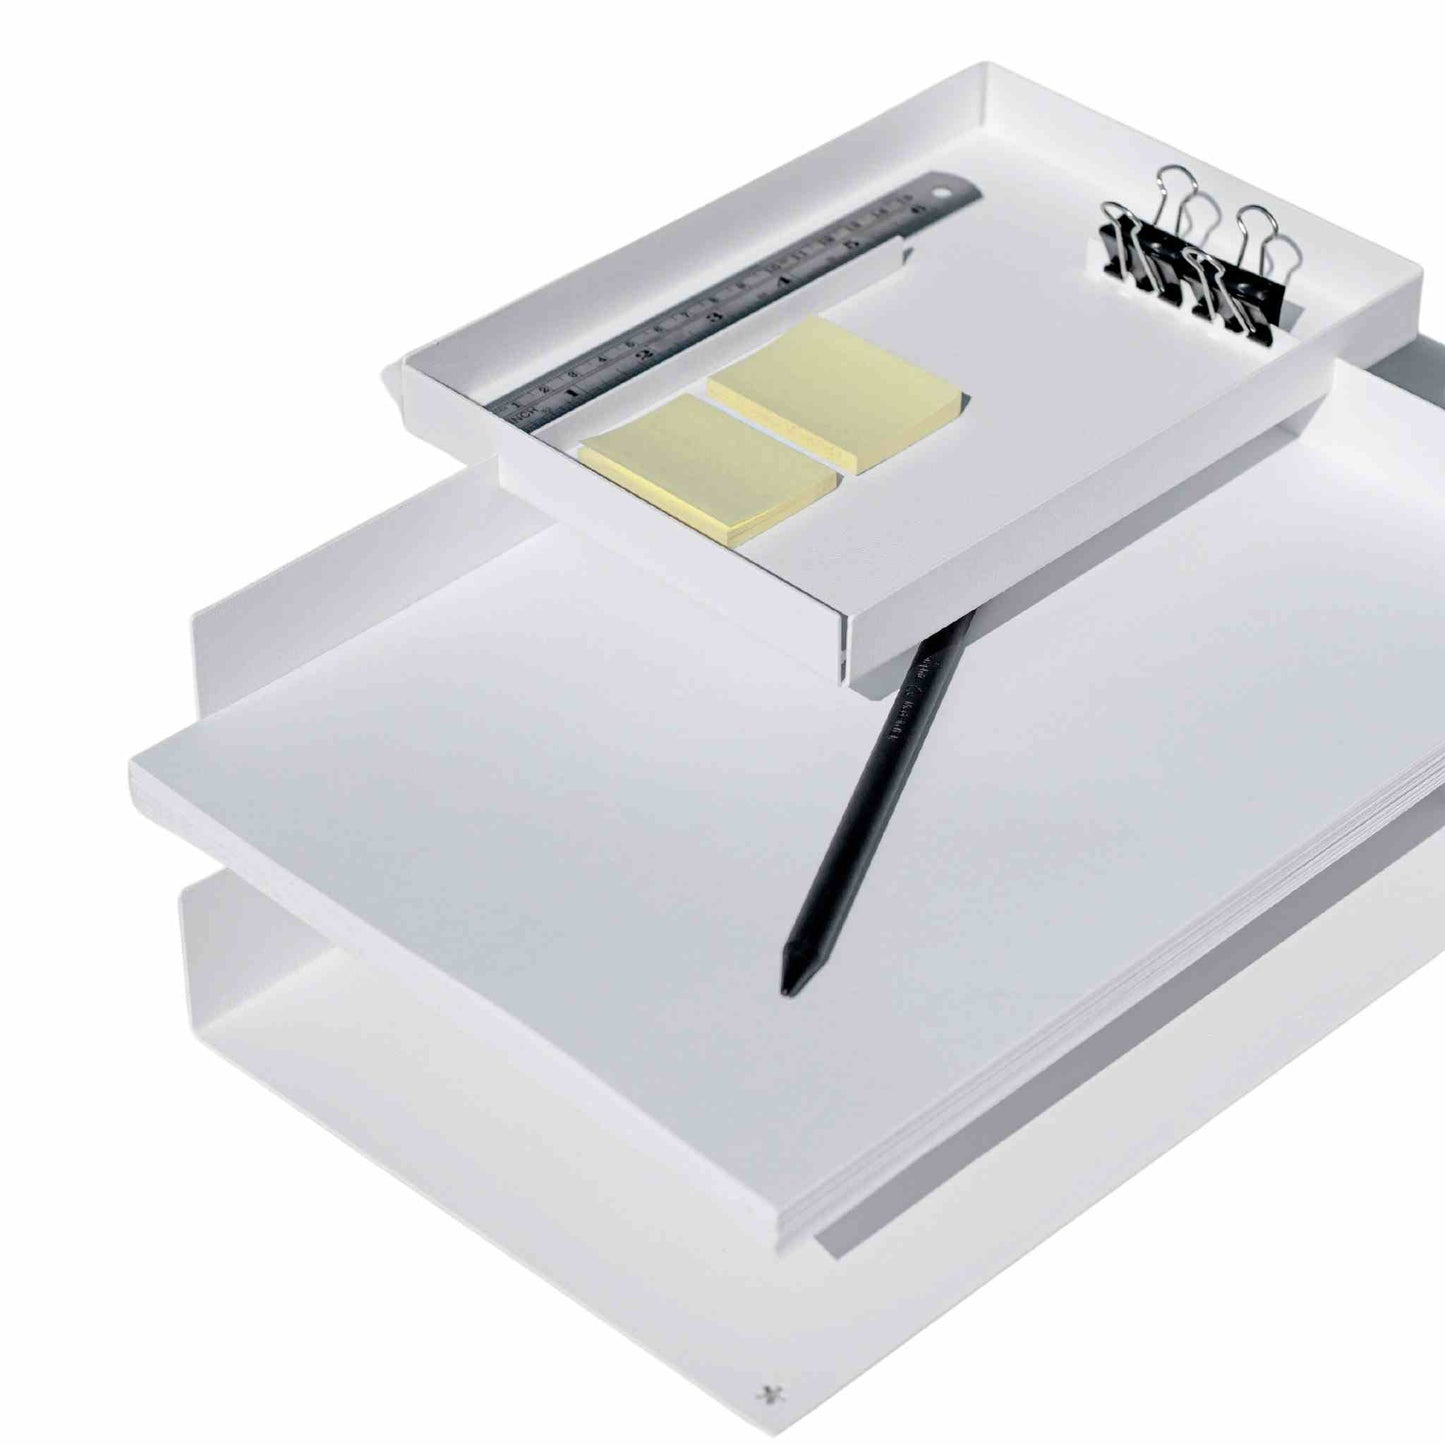 Briefablage - Schreibtischbox | für Büro und Homeoffice